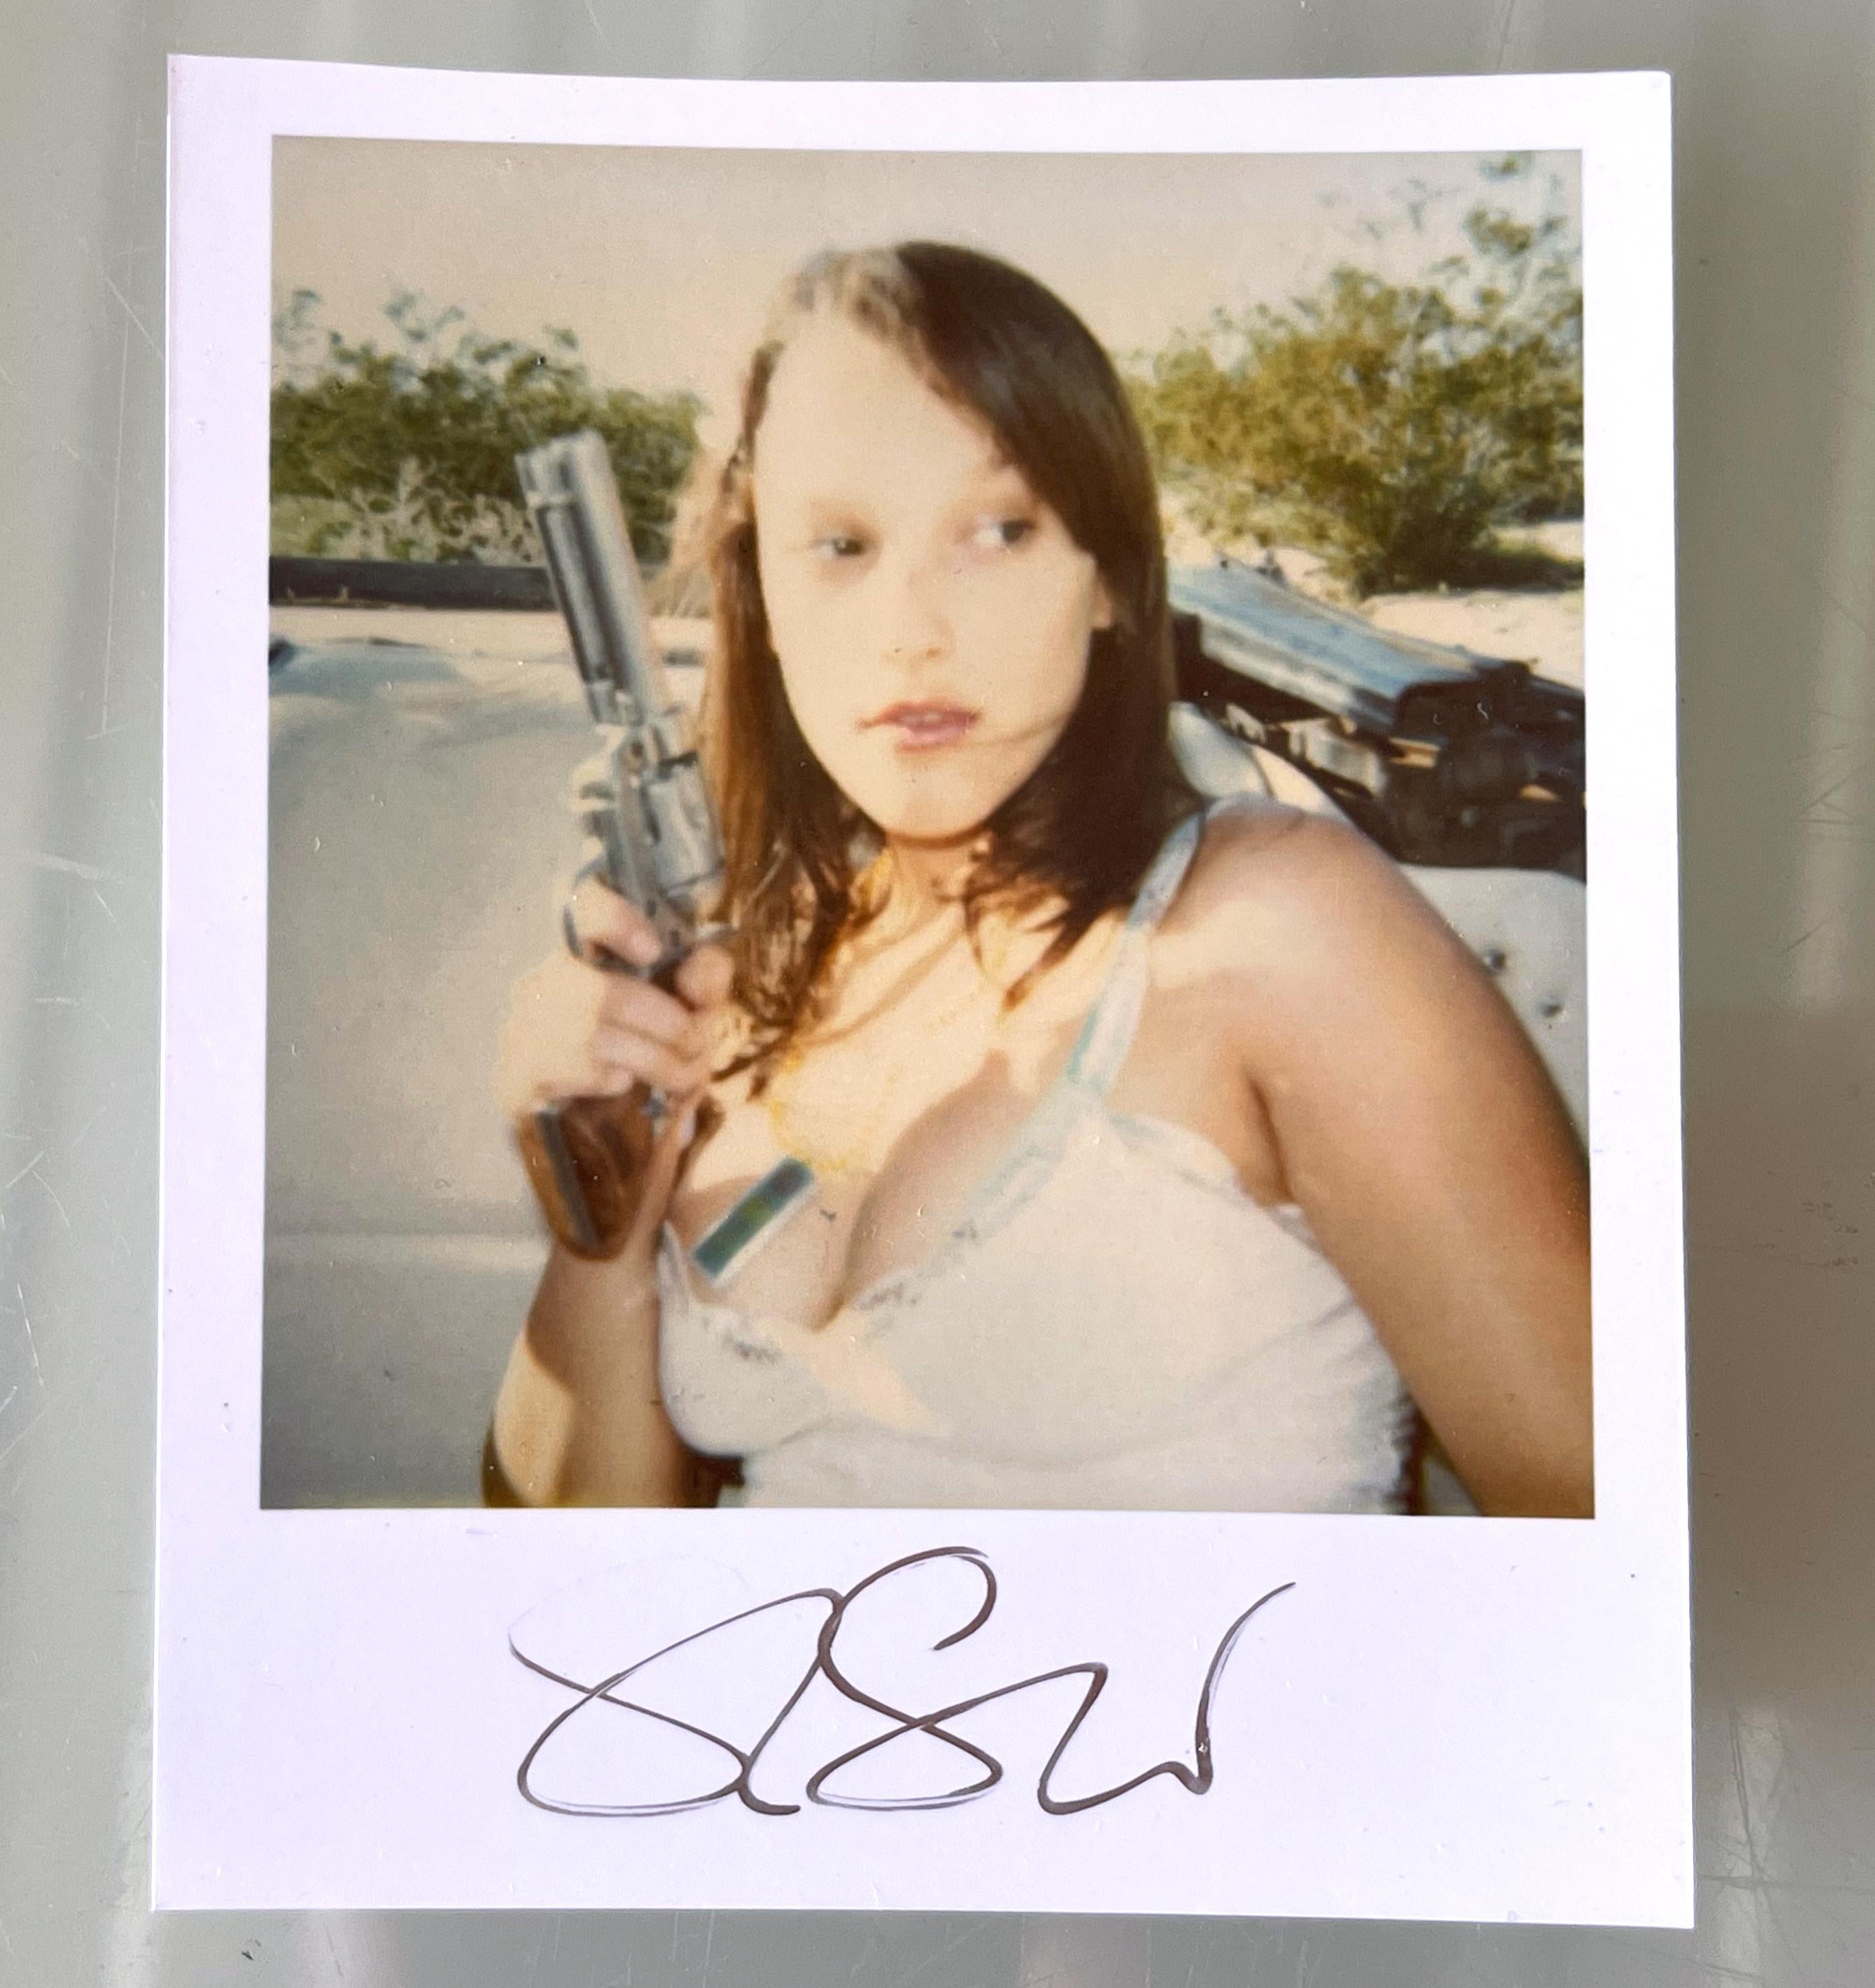 Stefanie Schneiders Mini
Six Shooter (Bis dass der Tod uns scheidet) - 2005
mit Austin Tate

vorne signiert, nicht montiert. 
Digitale Farbfotografien auf der Grundlage eines Polaroids. 

Offene Editionen in Polaroidgröße 1999-2023
10,7 x 8,8cm